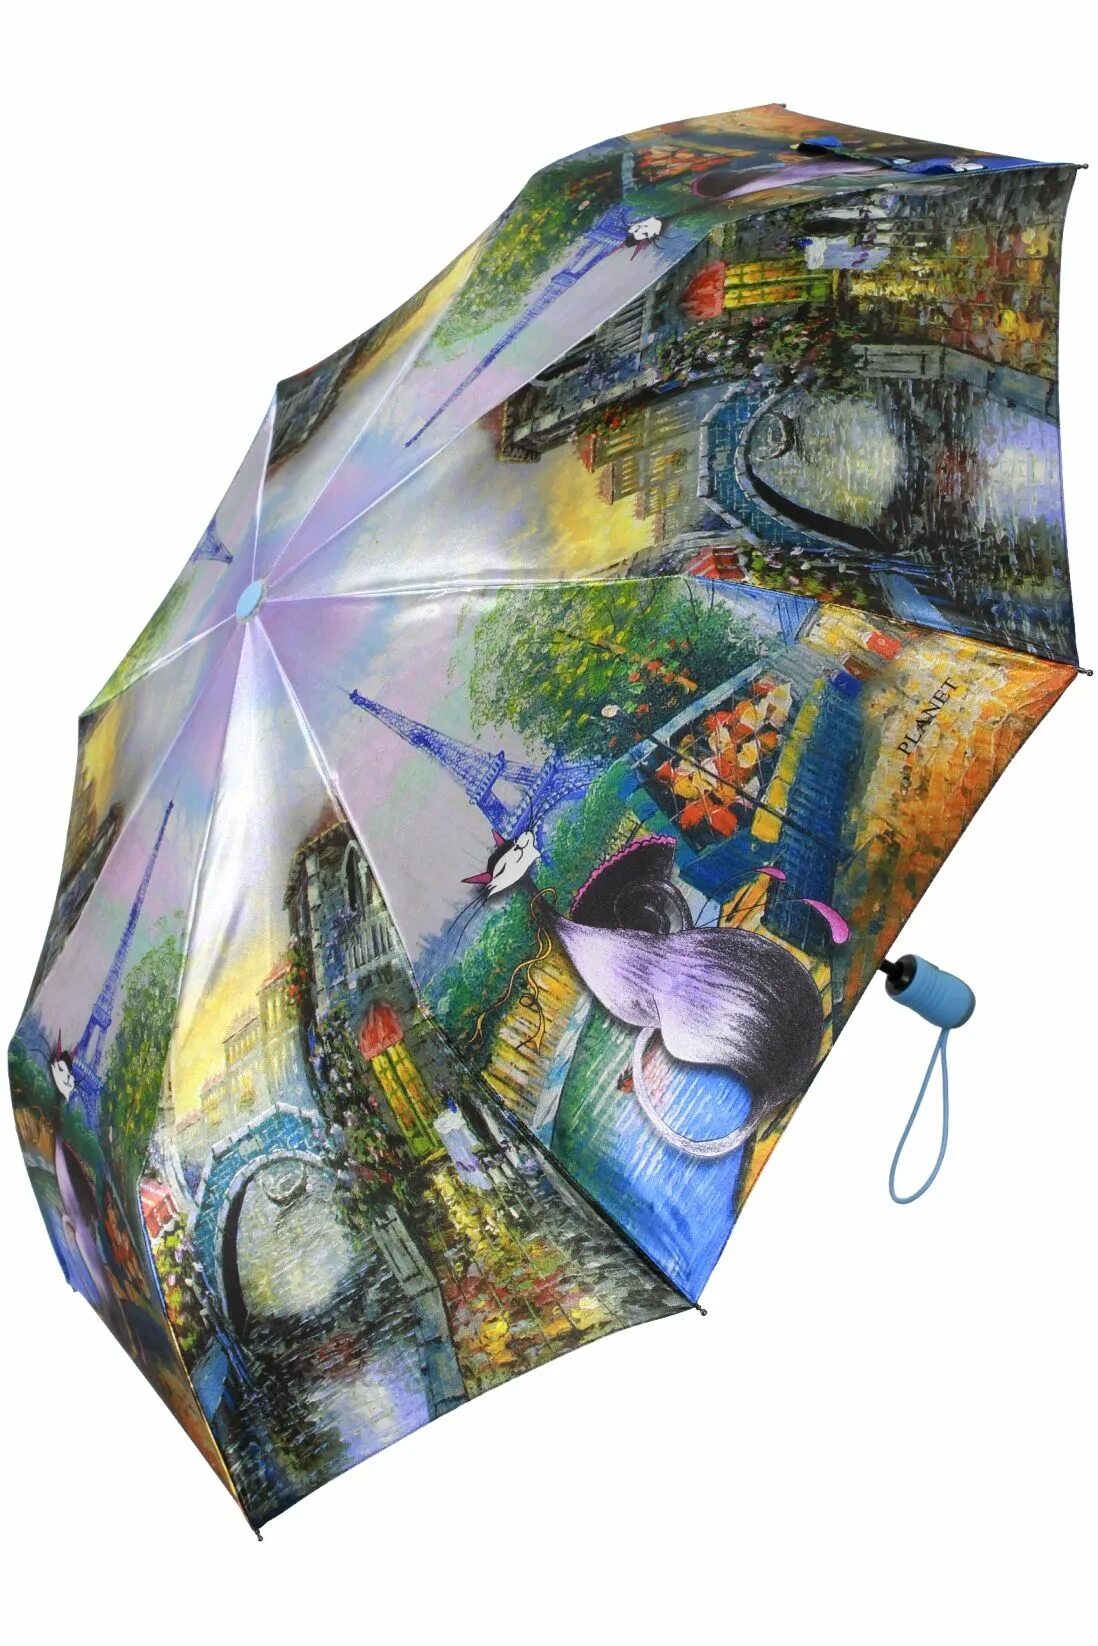 Зонт автомат антиветер женский Planet. Зонт Zest с кошками. Оригинальные зонты женские. Красивый зонт. Купить зонтик на озоне